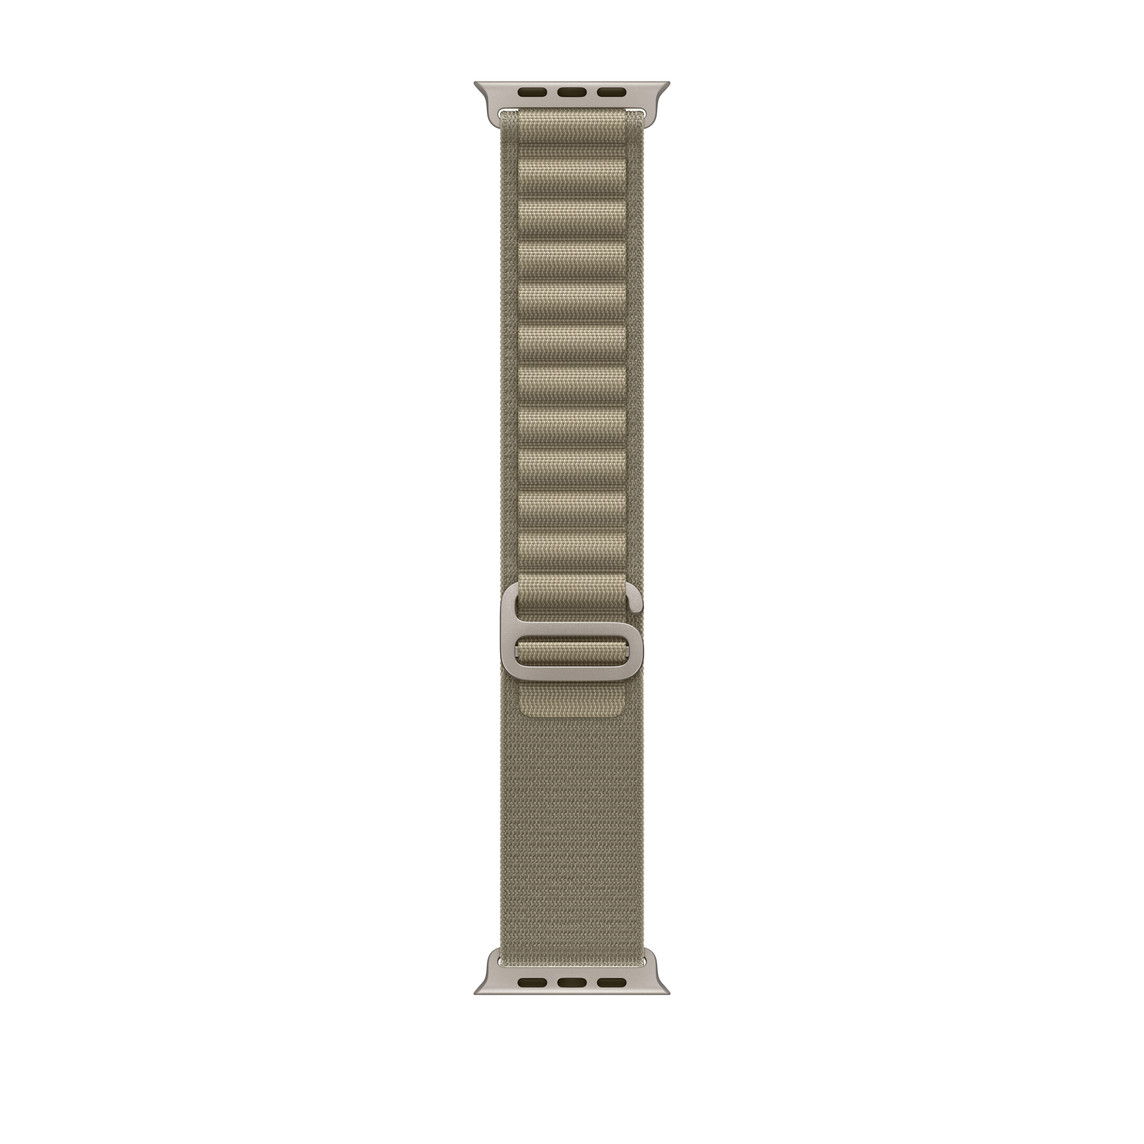 橄榄色高山回环式表带，展示双层精编织物材质、环扣和钛金属 G 式表扣。